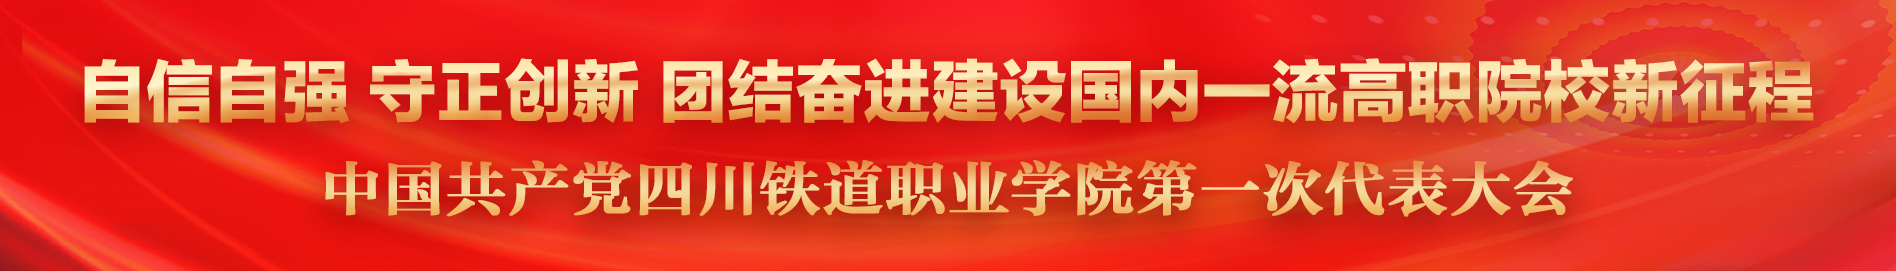 中国共产党4556银河国际在线第一次代表大会